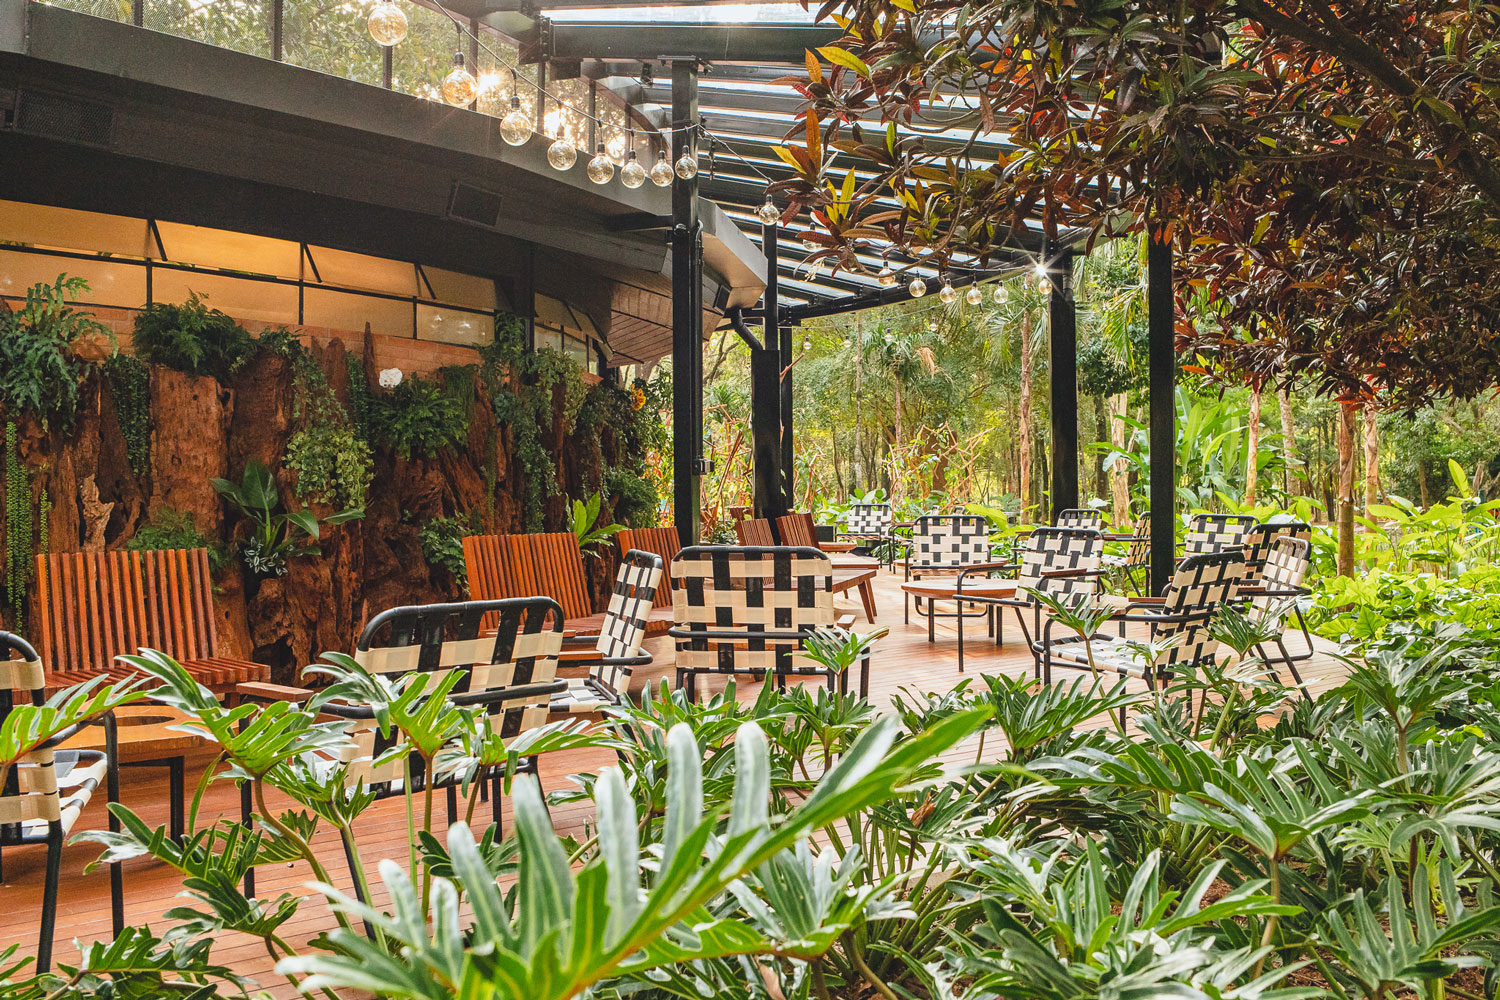 Restaurante Selvagem: Foto das mesas e jardim do restaurante